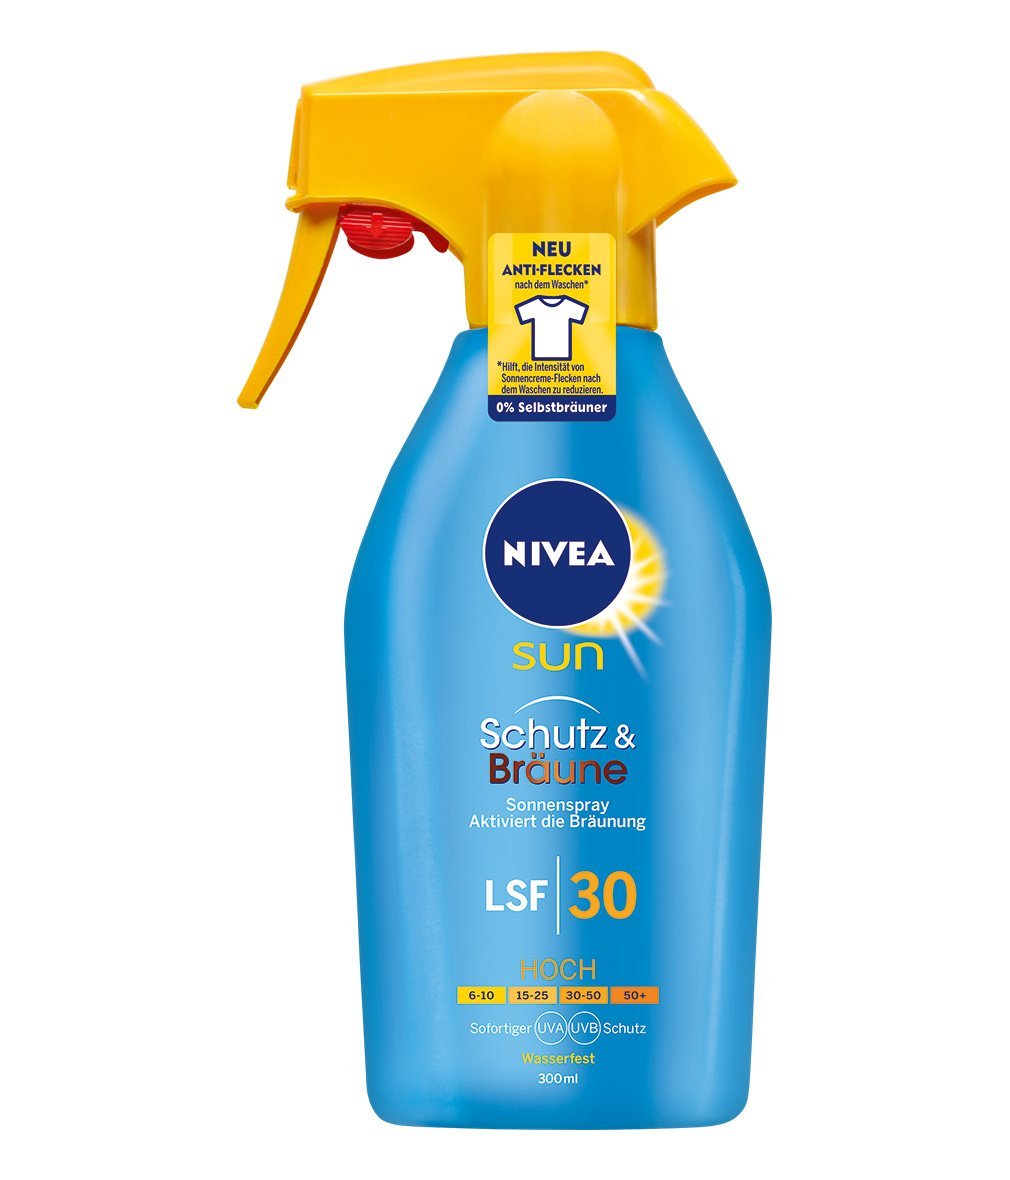 NIVEA SUN Sonnenspray, Lichtschutzfaktor 30, Trigger-Sprühflasche, Schutz und Bräune, 300 ml